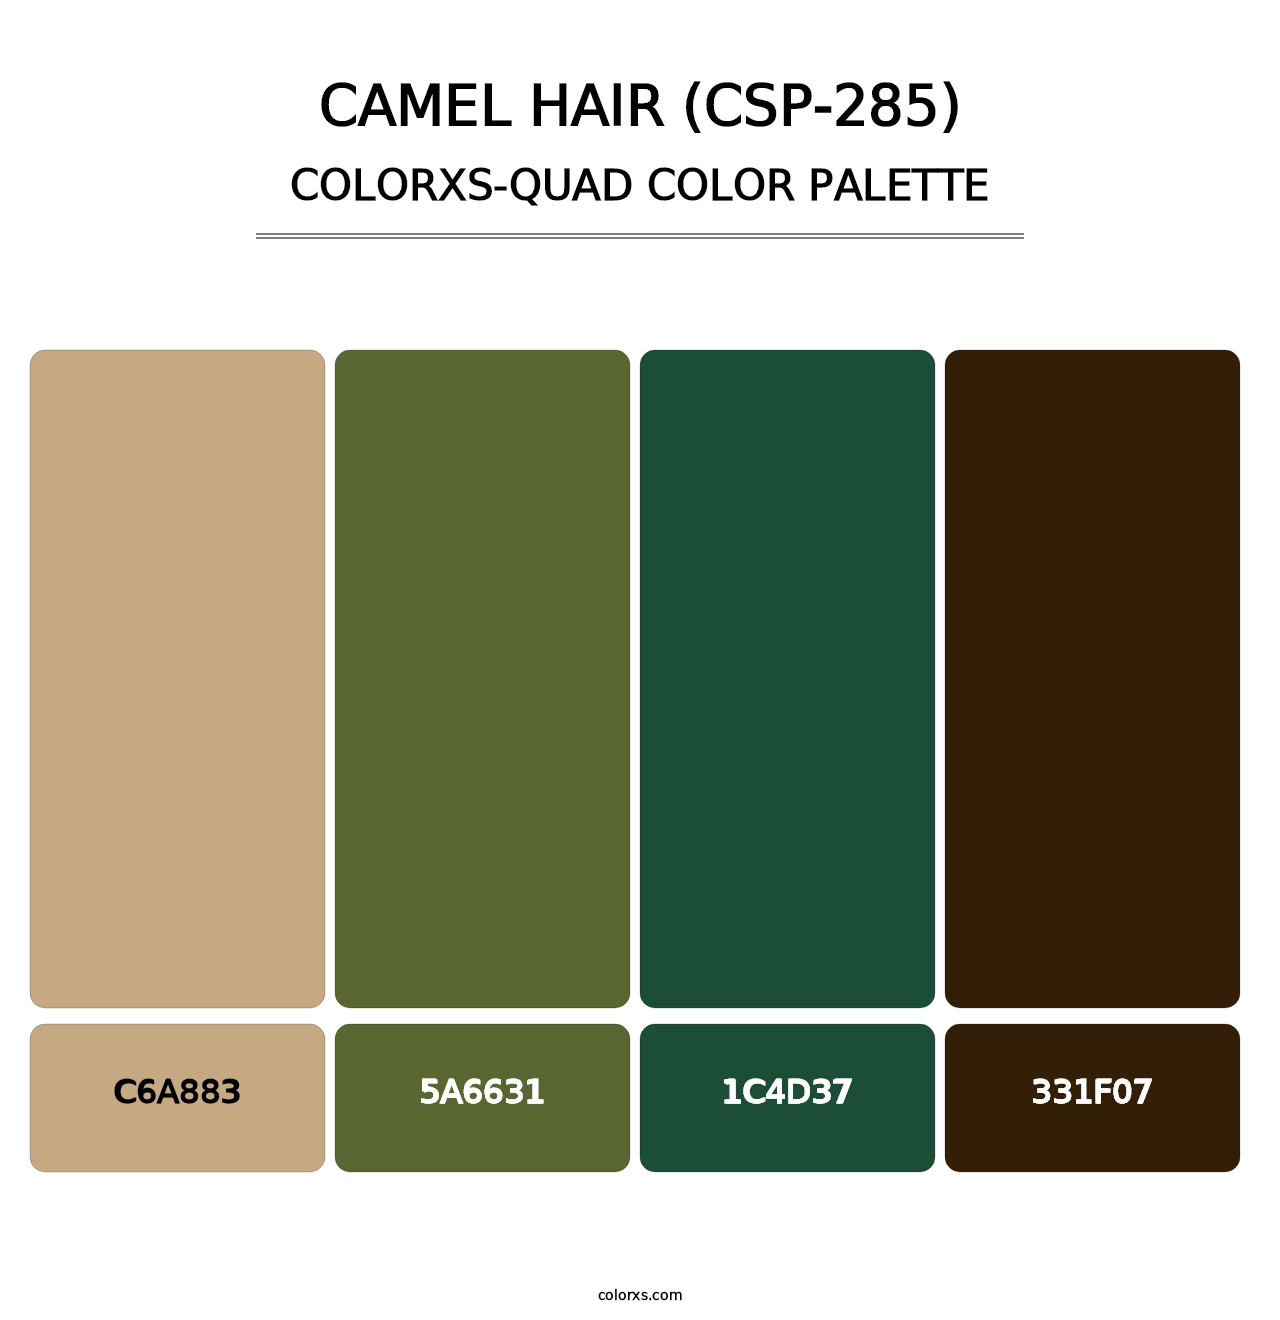 Camel Hair (CSP-285) - Colorxs Quad Palette